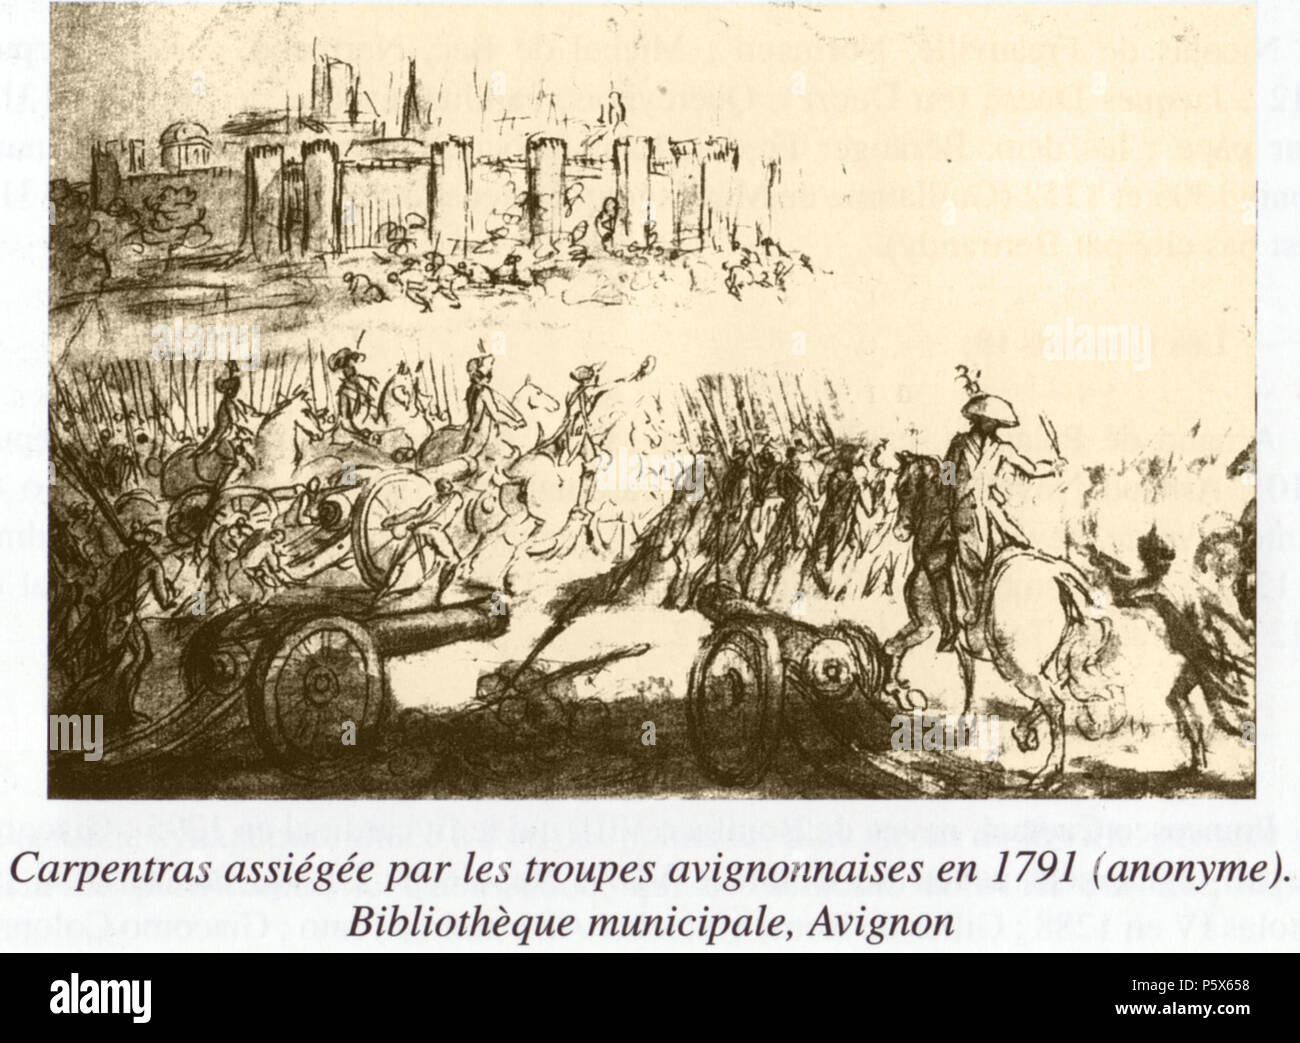 26 18 Siège de Carpentras (1791) Anonyme Bibliothèque municipale Ceccano Avignon Stock Photo